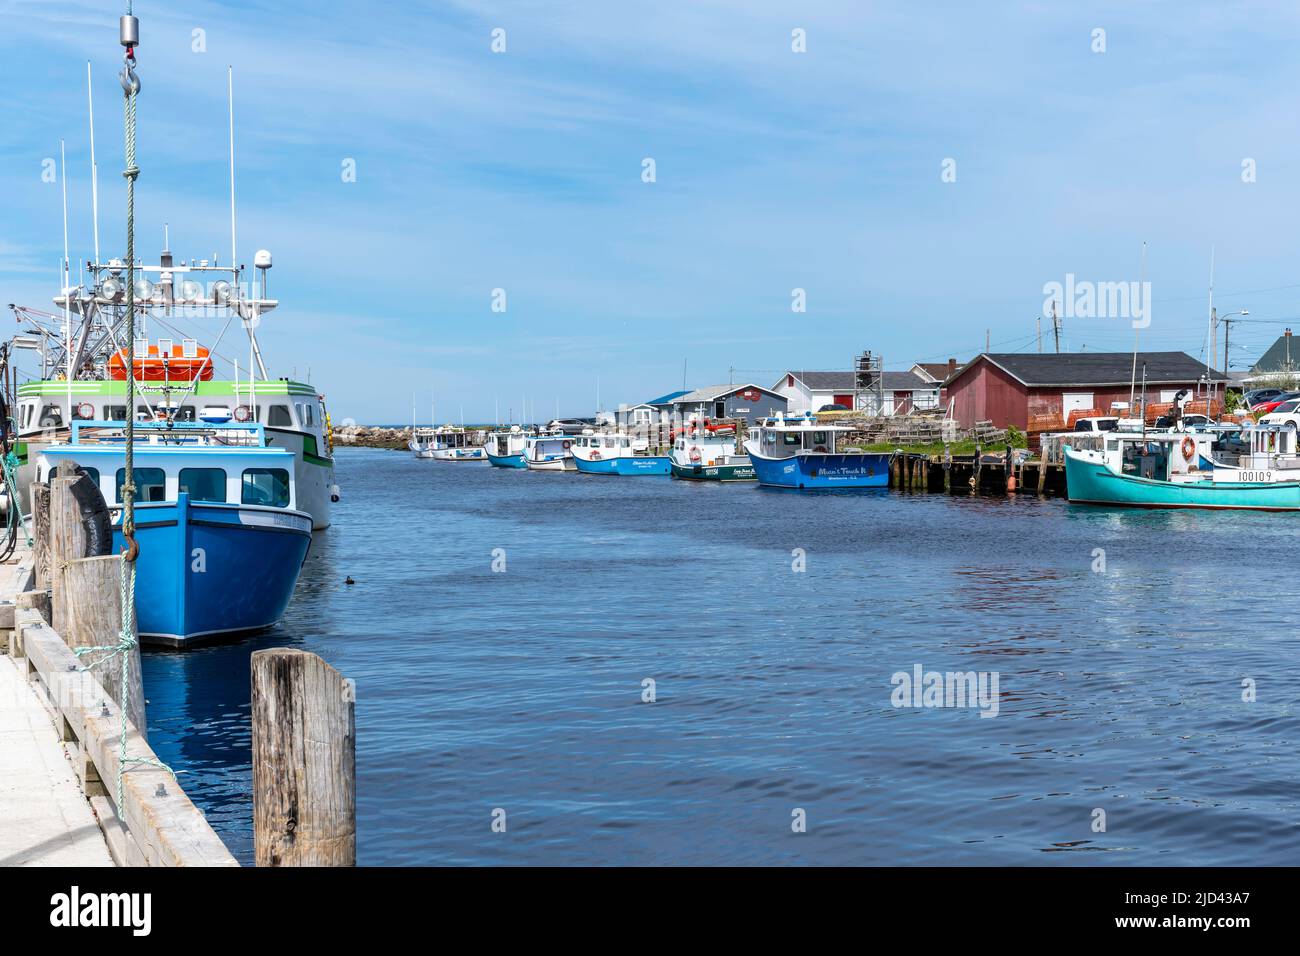 Des bateaux de pêche au homard amarrés au port de glace Bay, Cap-Breton, Nouvelle-Écosse. La pêche au homard est très importante pour l'économie de la région. Banque D'Images